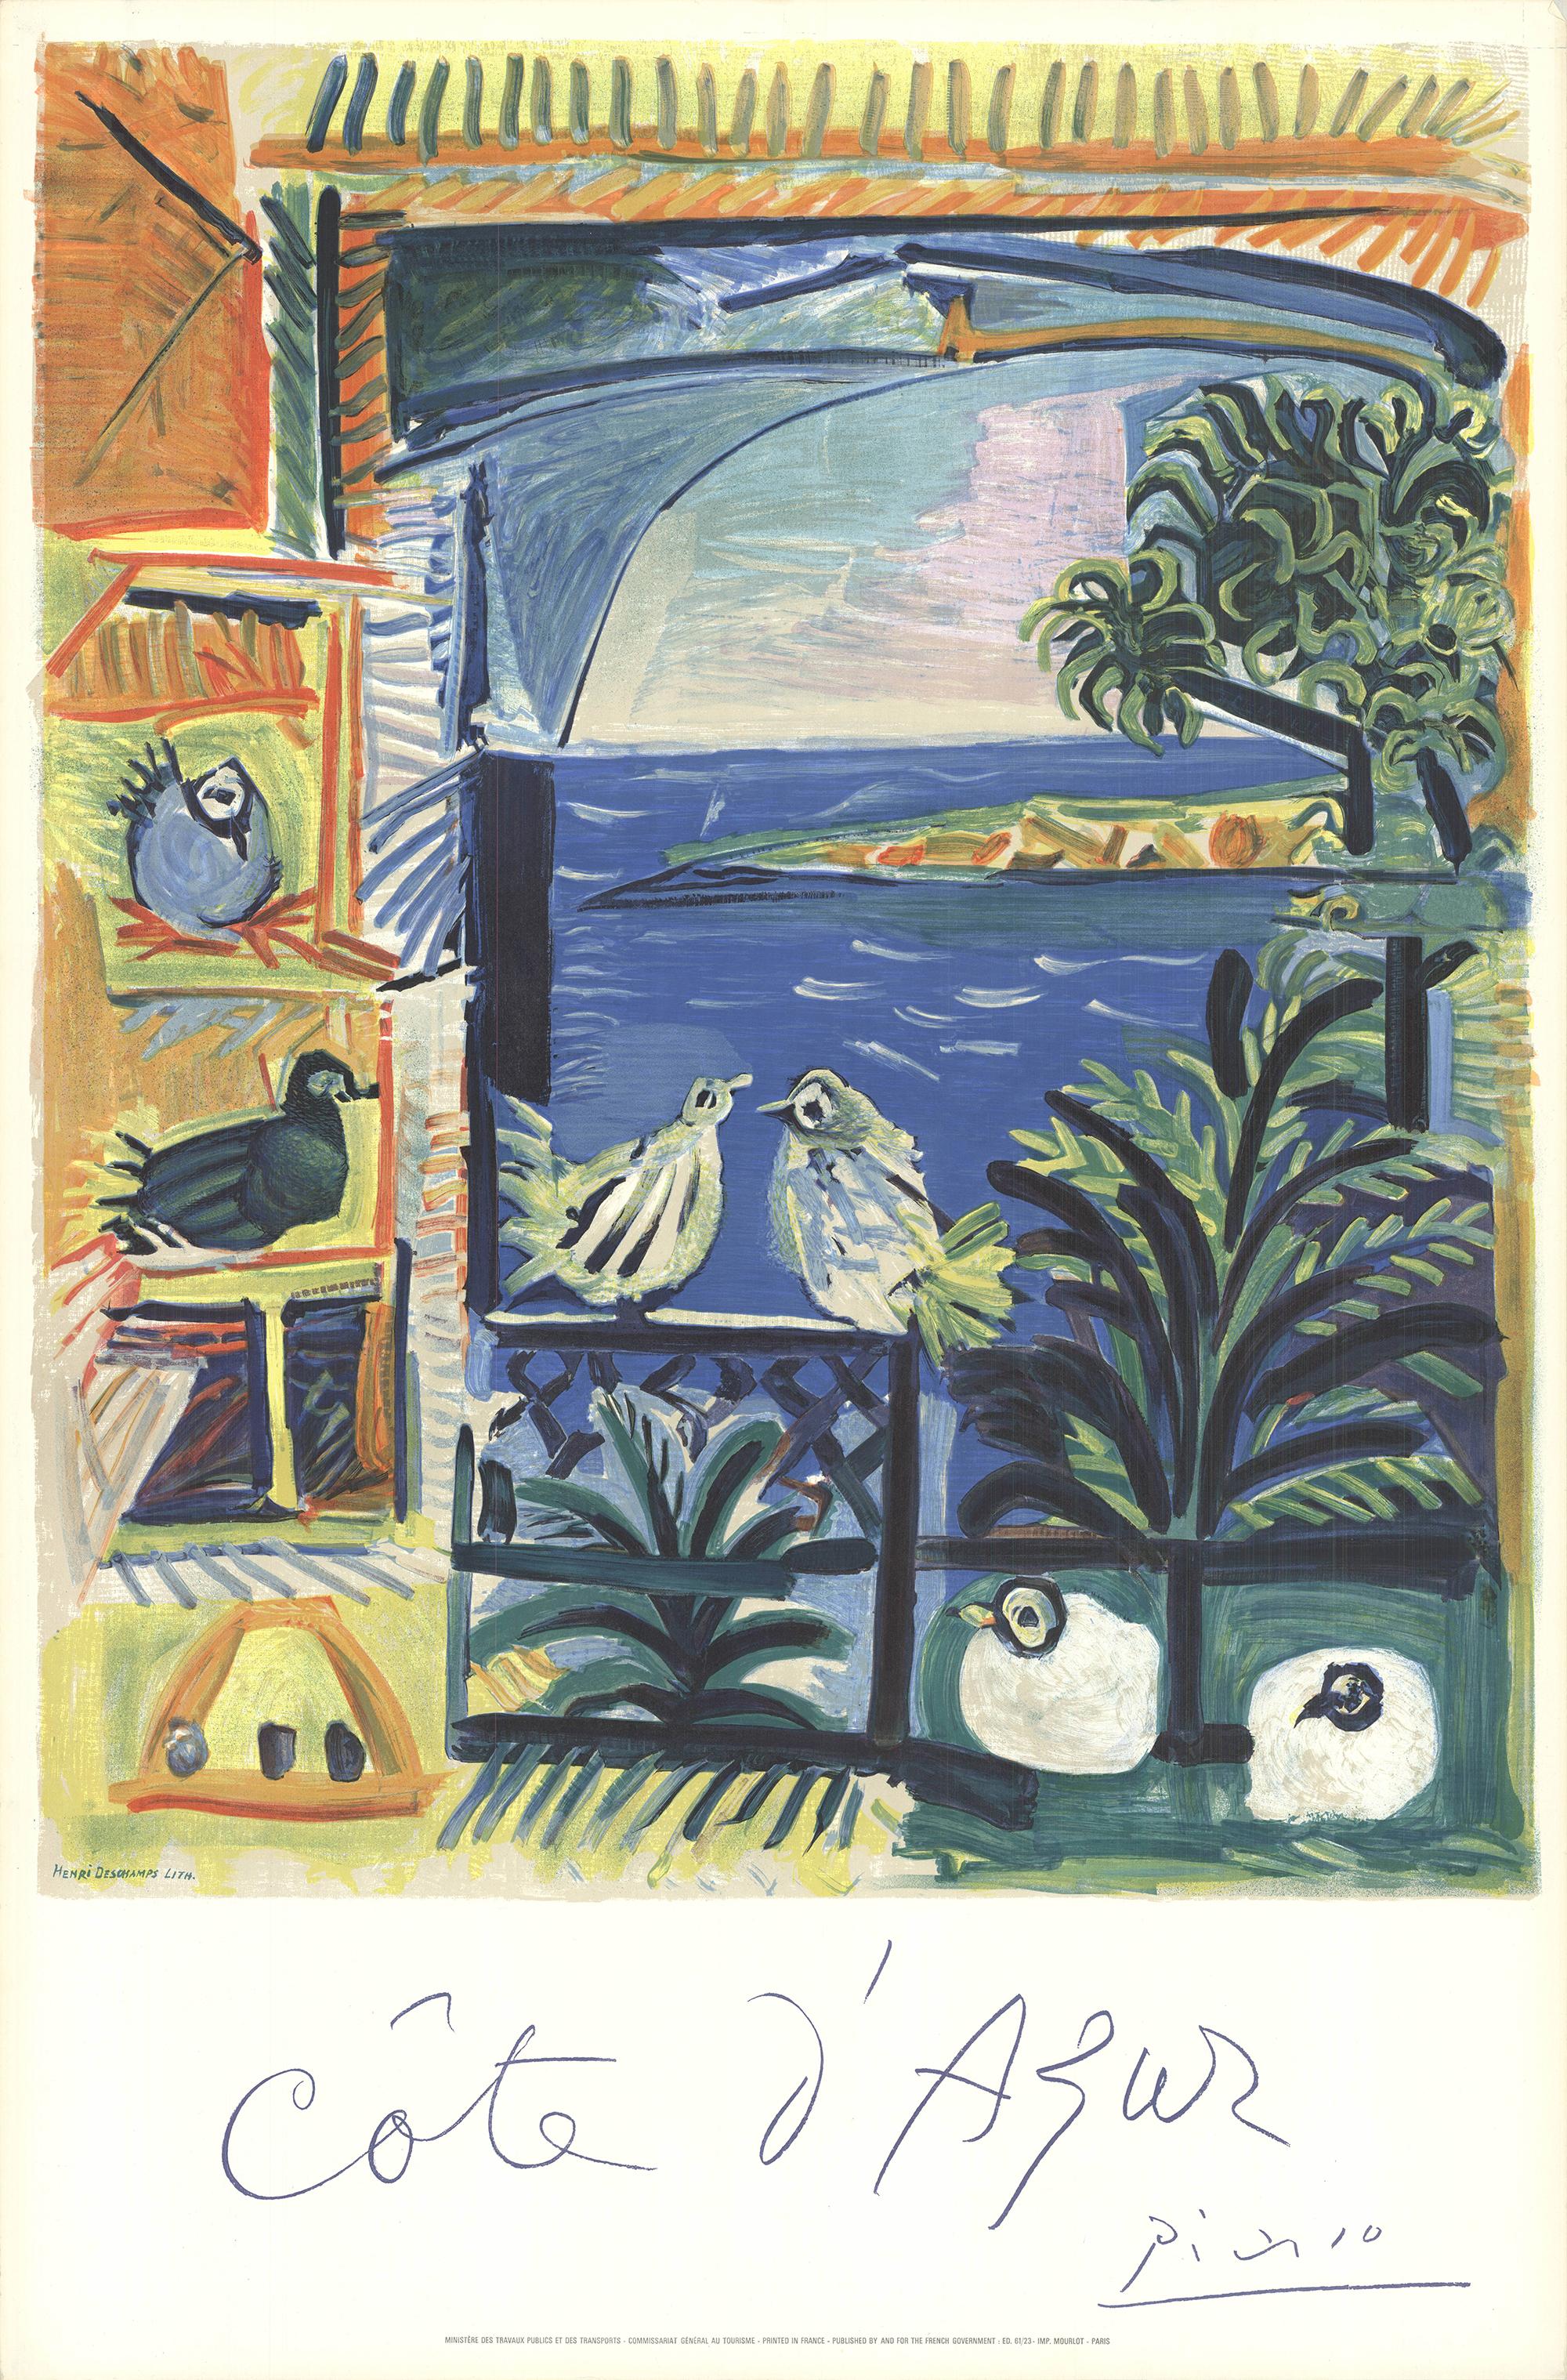 L'affiche d'après Picasso
Czwiklitzer #177
Affiche originale conçue par Picasso en collaboration avec Henri Deschamps. La lithographie a été publiée par le ministère des Transports et des Travaux publics, en France, et imprimée par l'Imprimerie